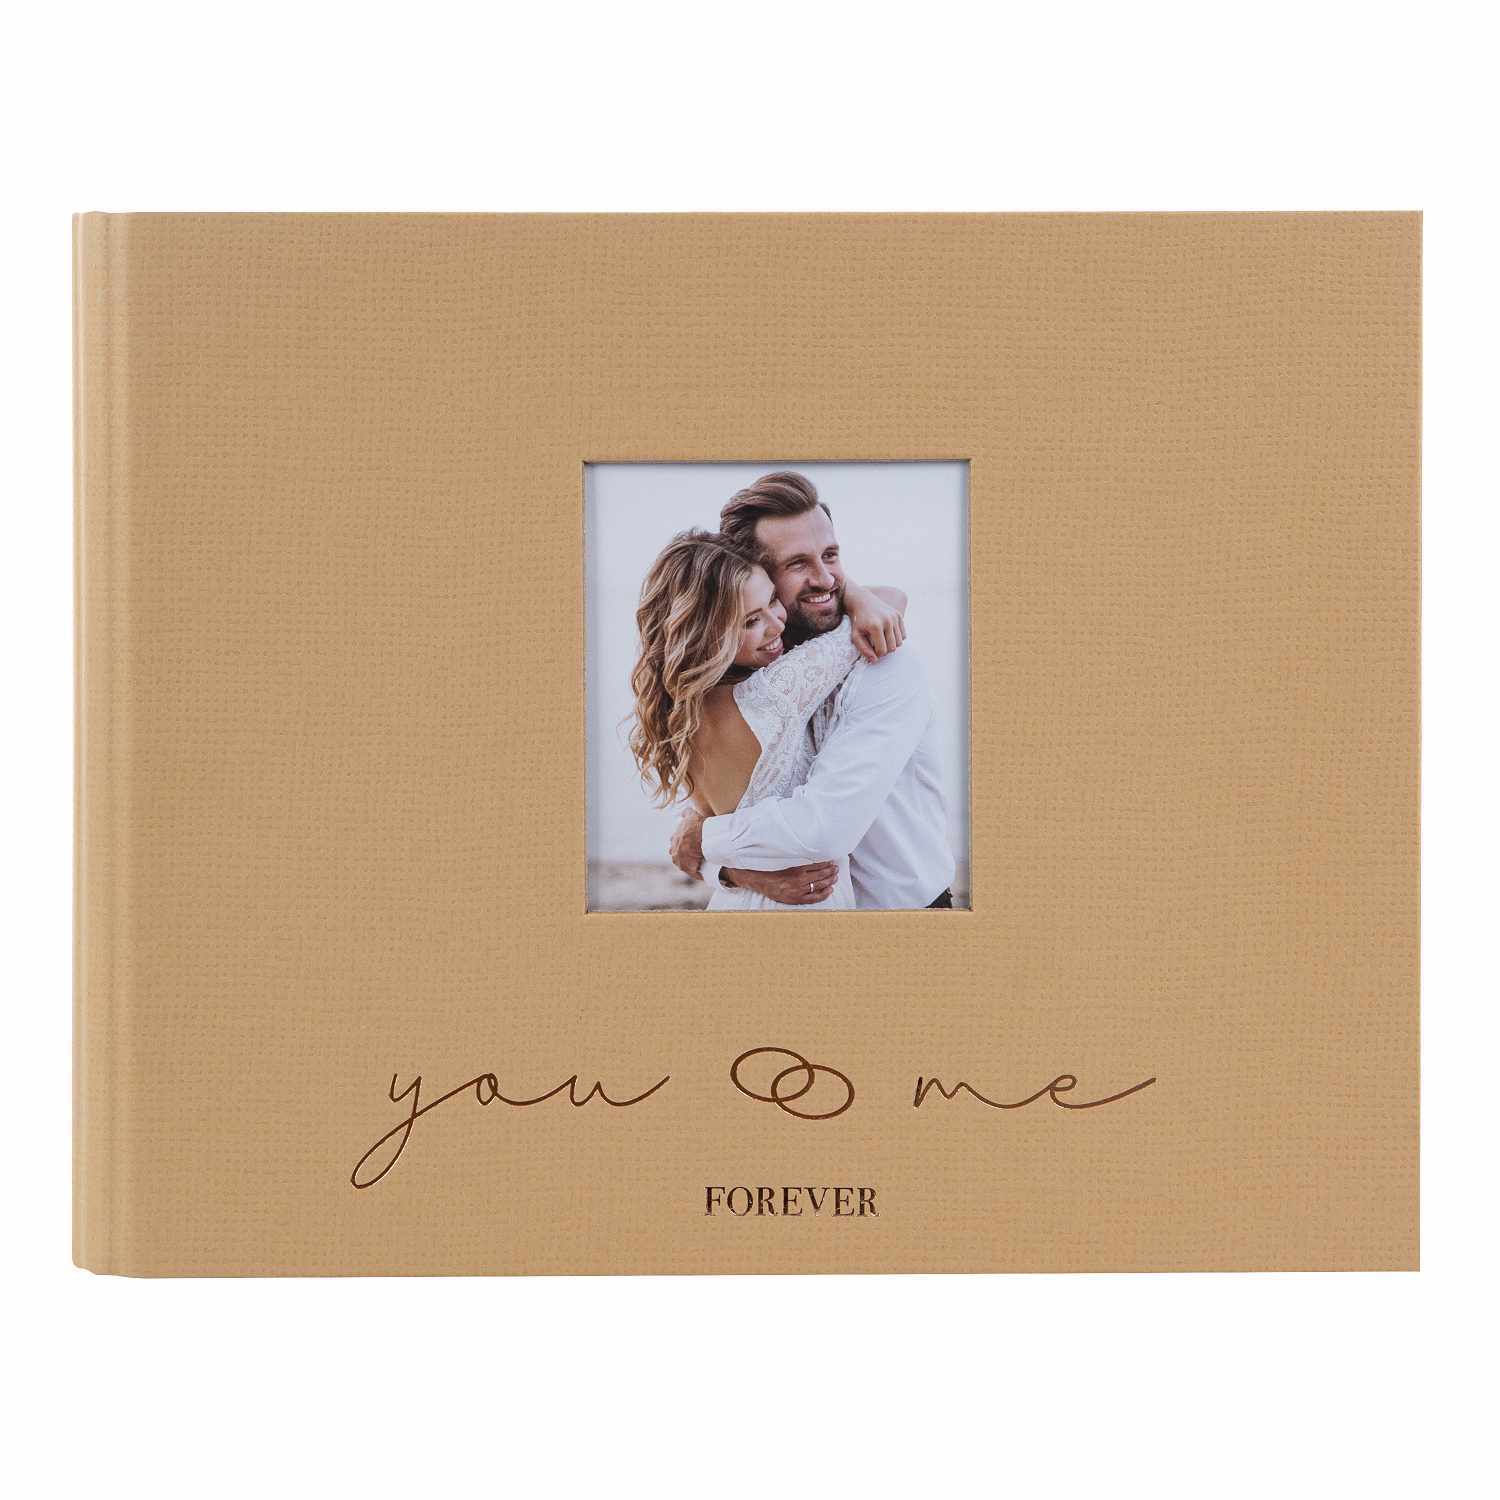 Fotoalbum you & me forever braun mit Sichtfenster 29x23cm 50 Seiten